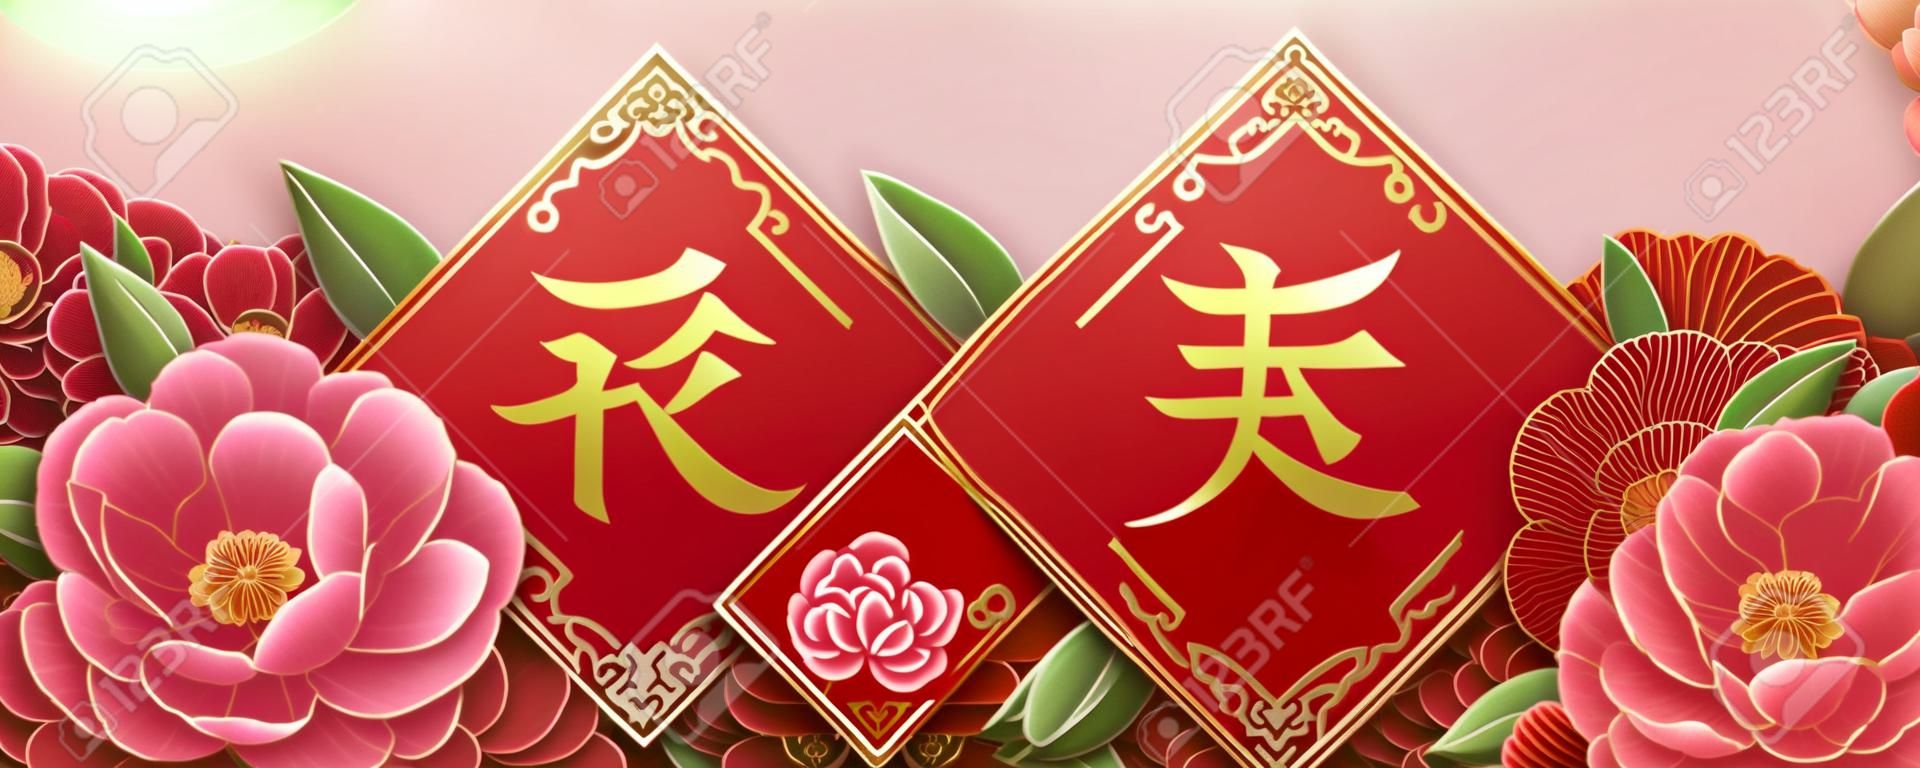 Conception de l'année lunaire avec de belles fleurs de pivoine, printemps écrit en chinois au milieu